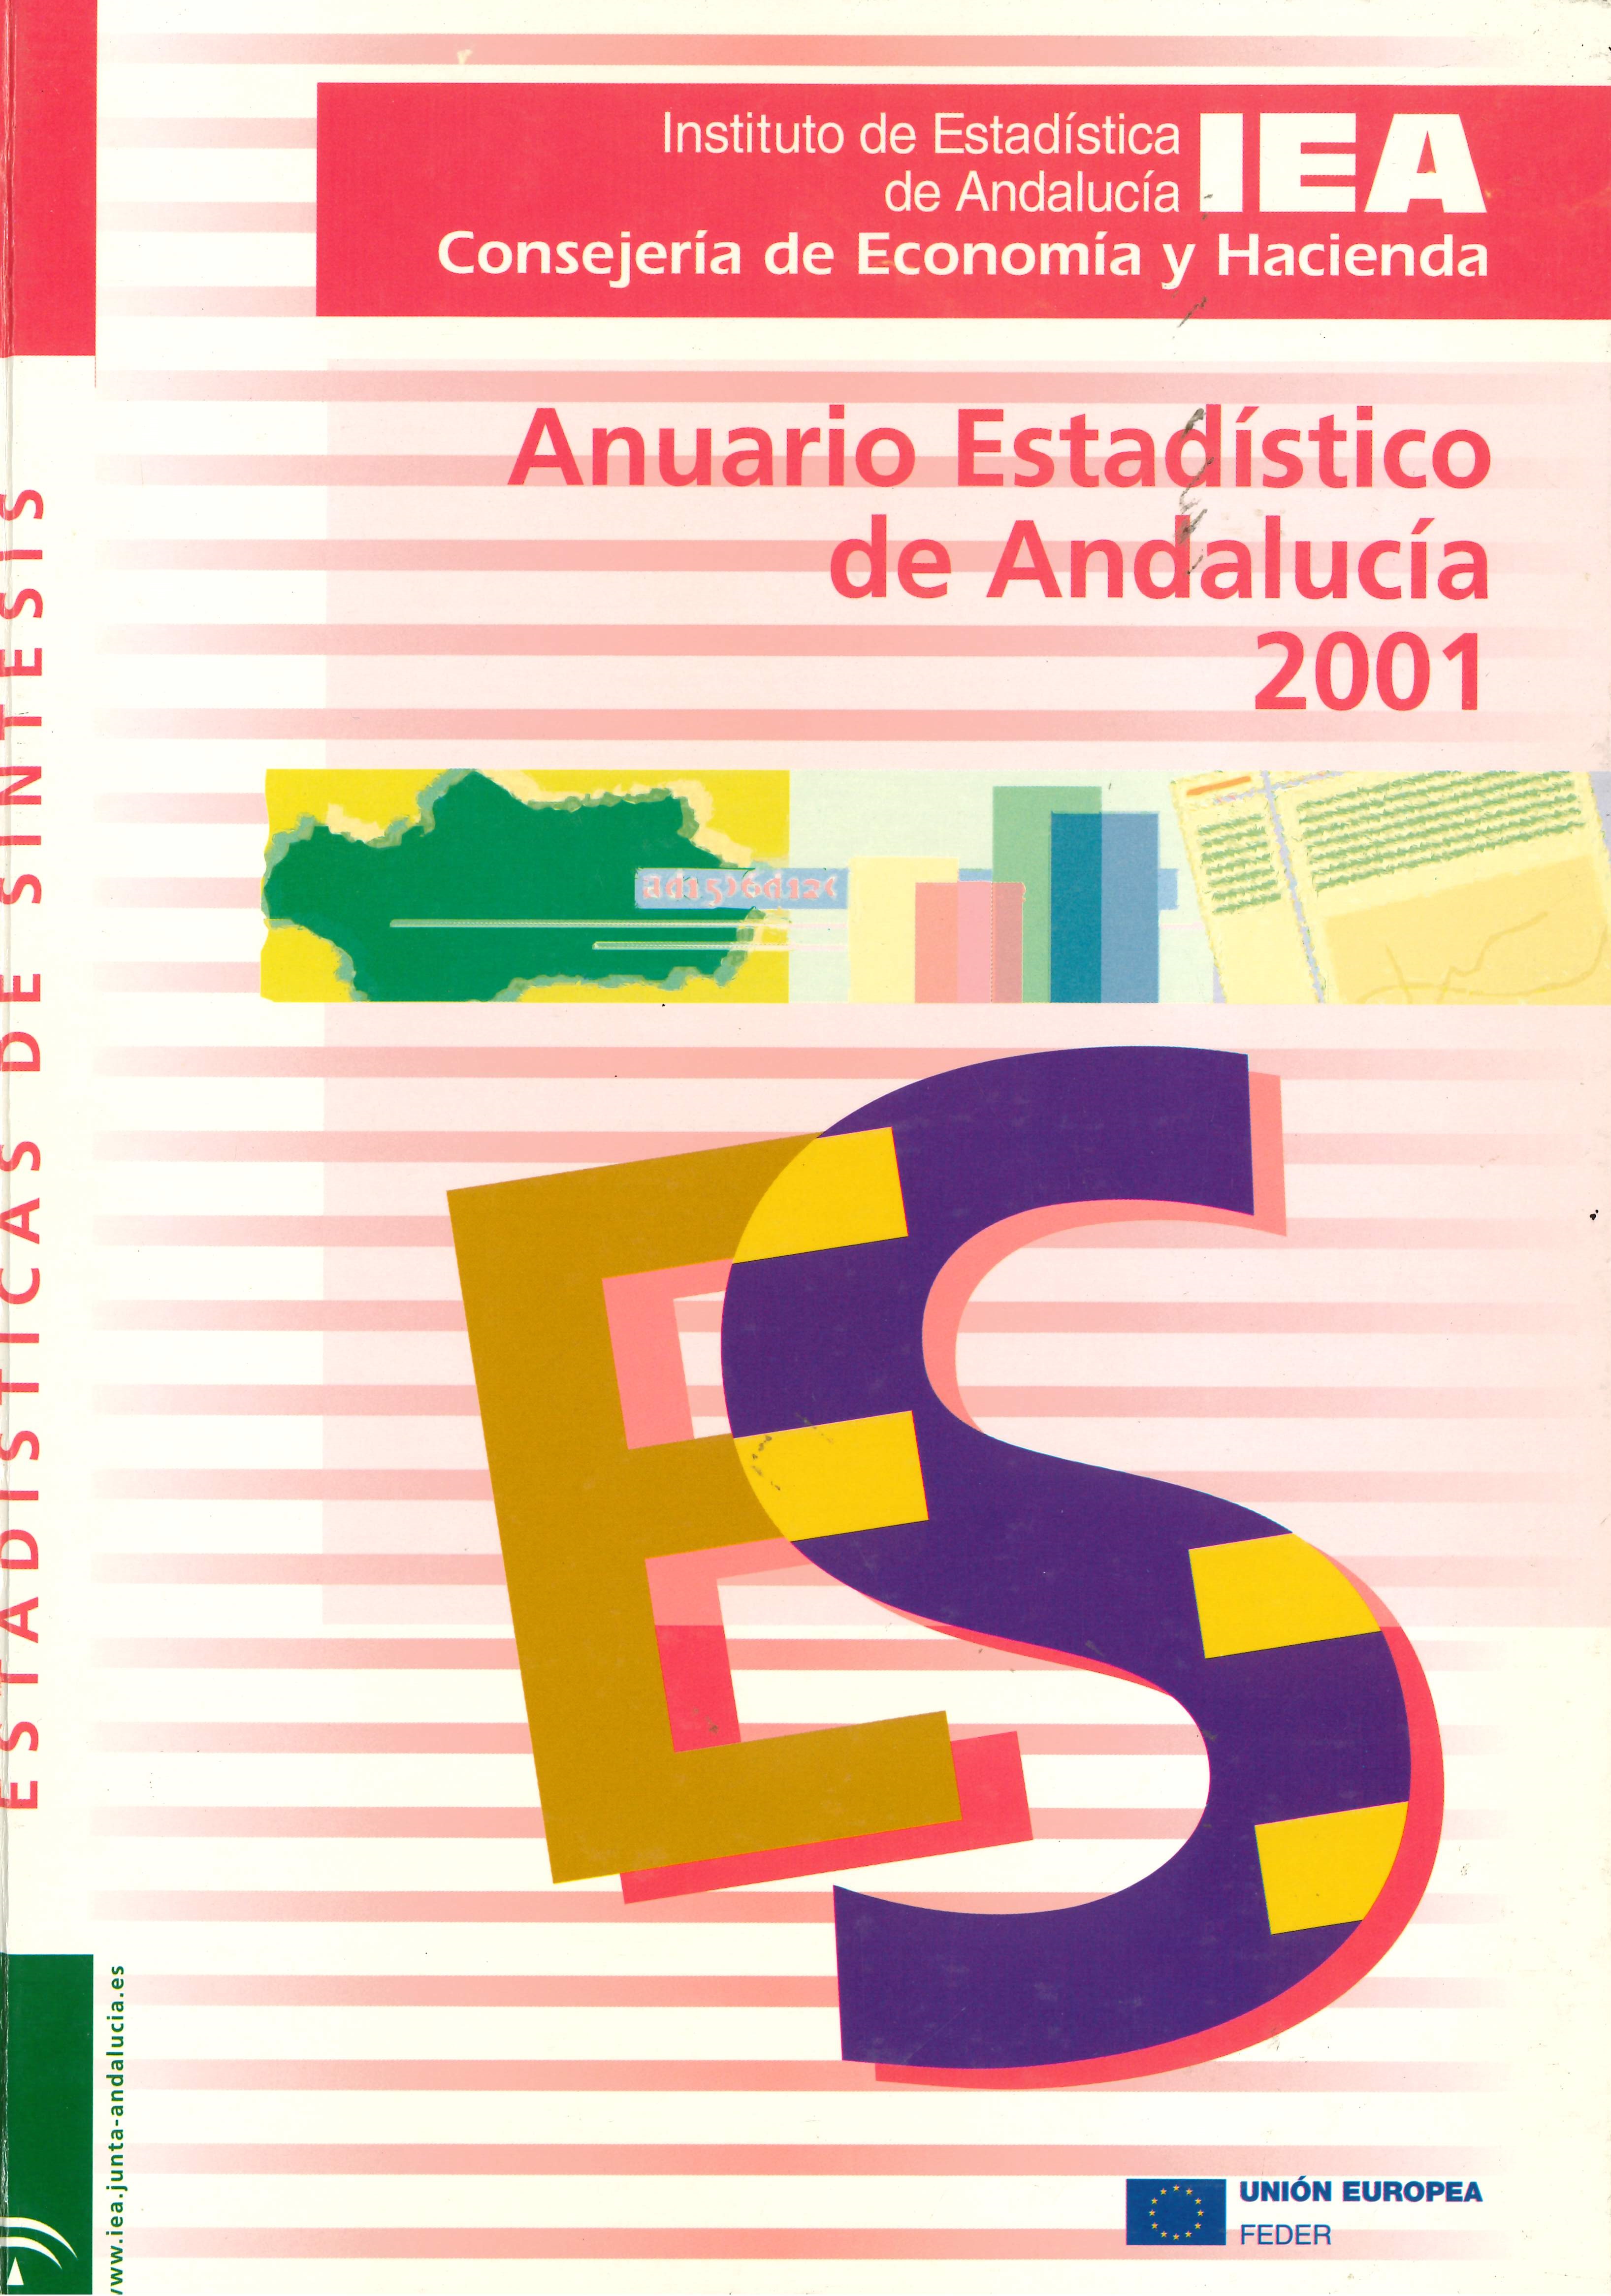 Imagen representativa de la publicación Anuario estadístico de Andalucía 2001